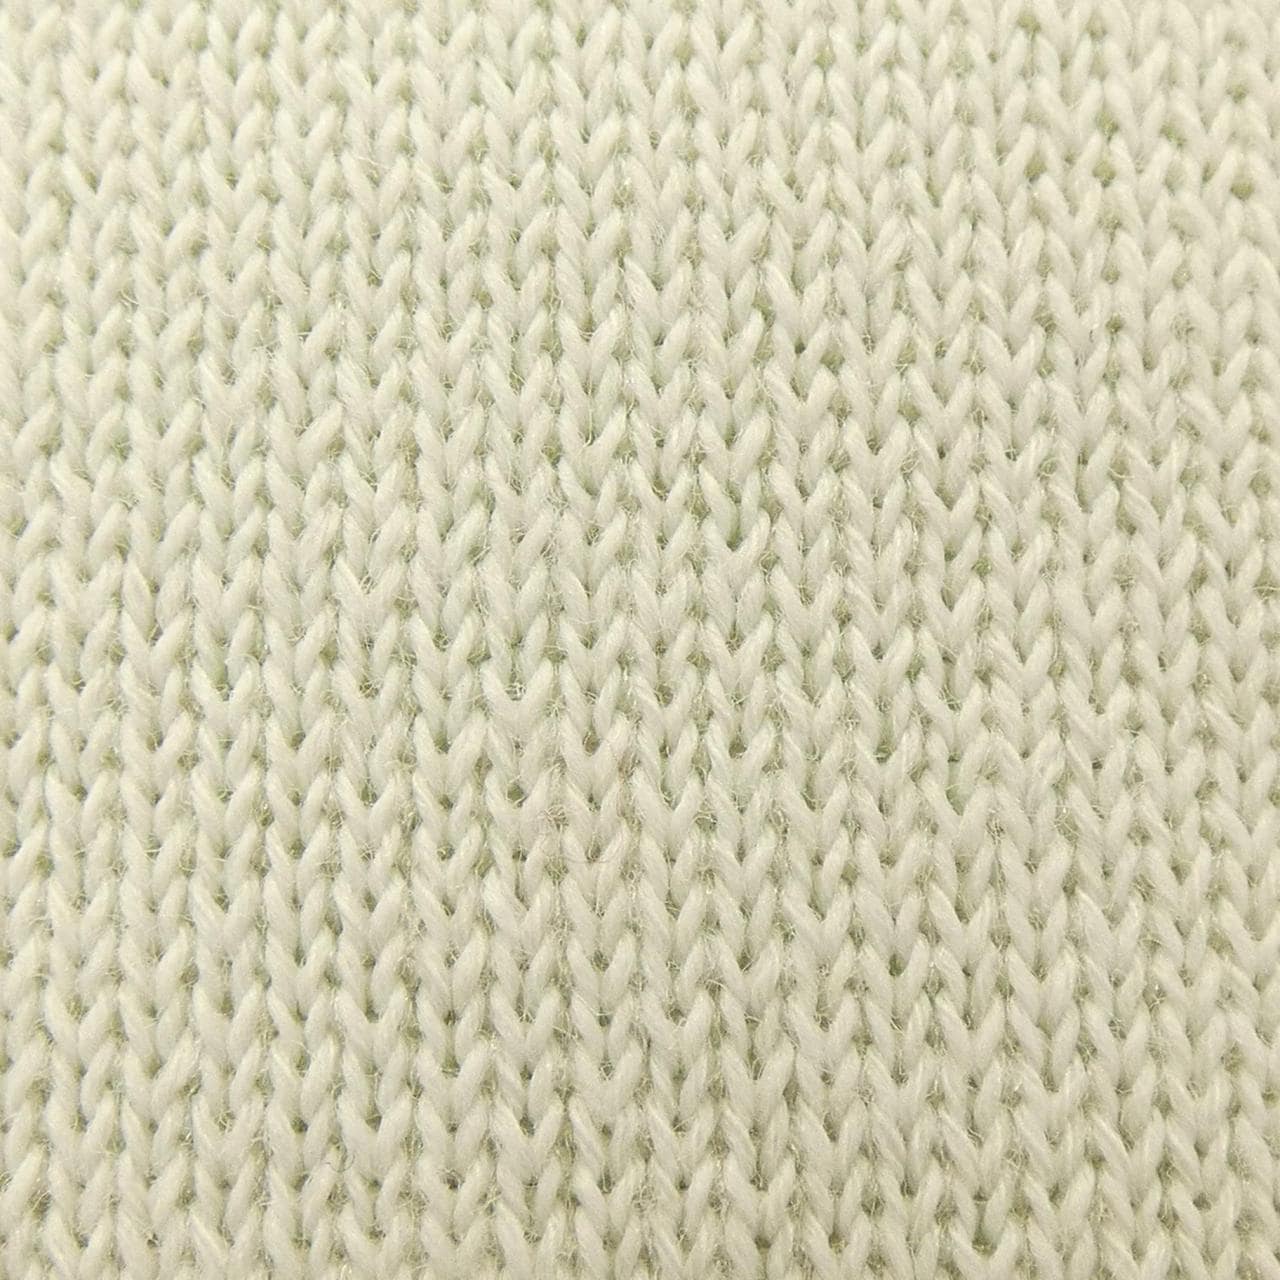 Rito knit